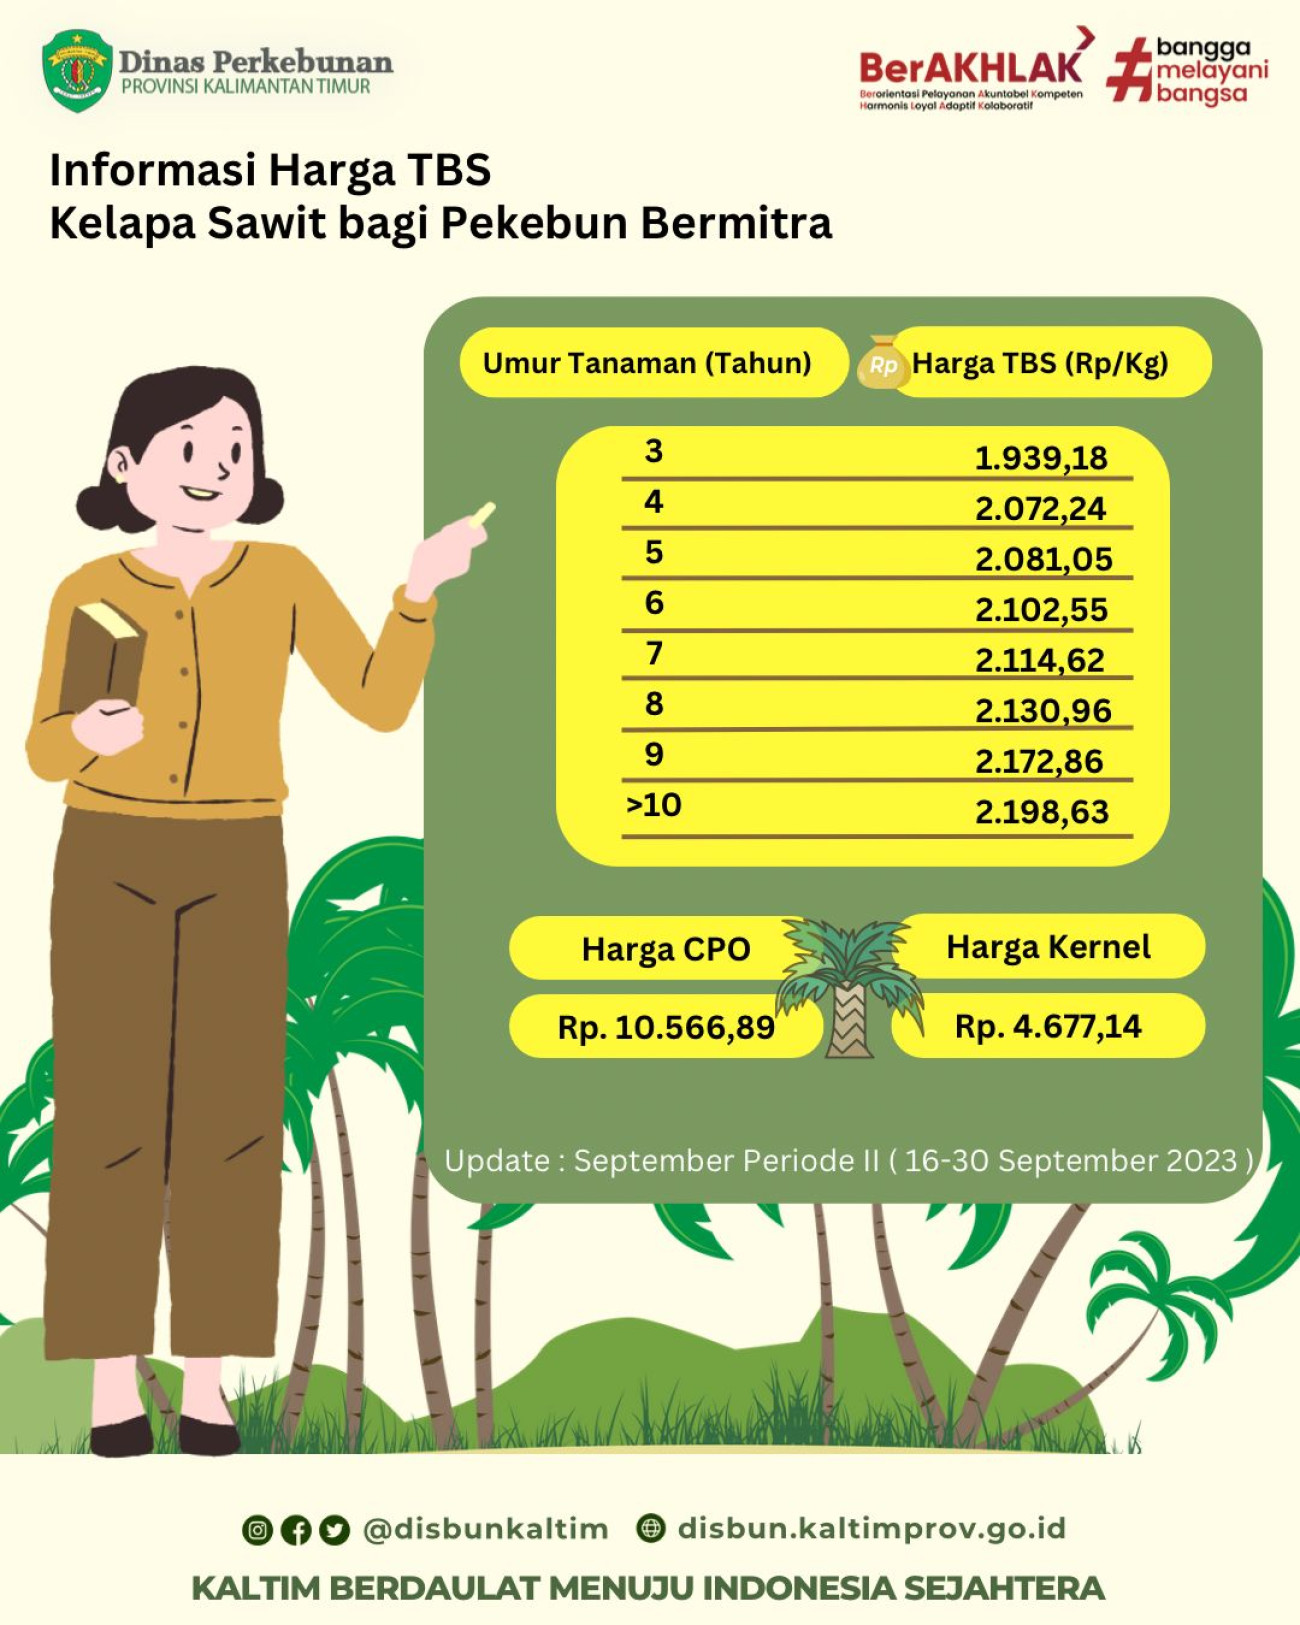 Informasi Harga TBS Kelapa Sawit Bagi Pekebun Bermitra Periode 16 - 30 September 2023